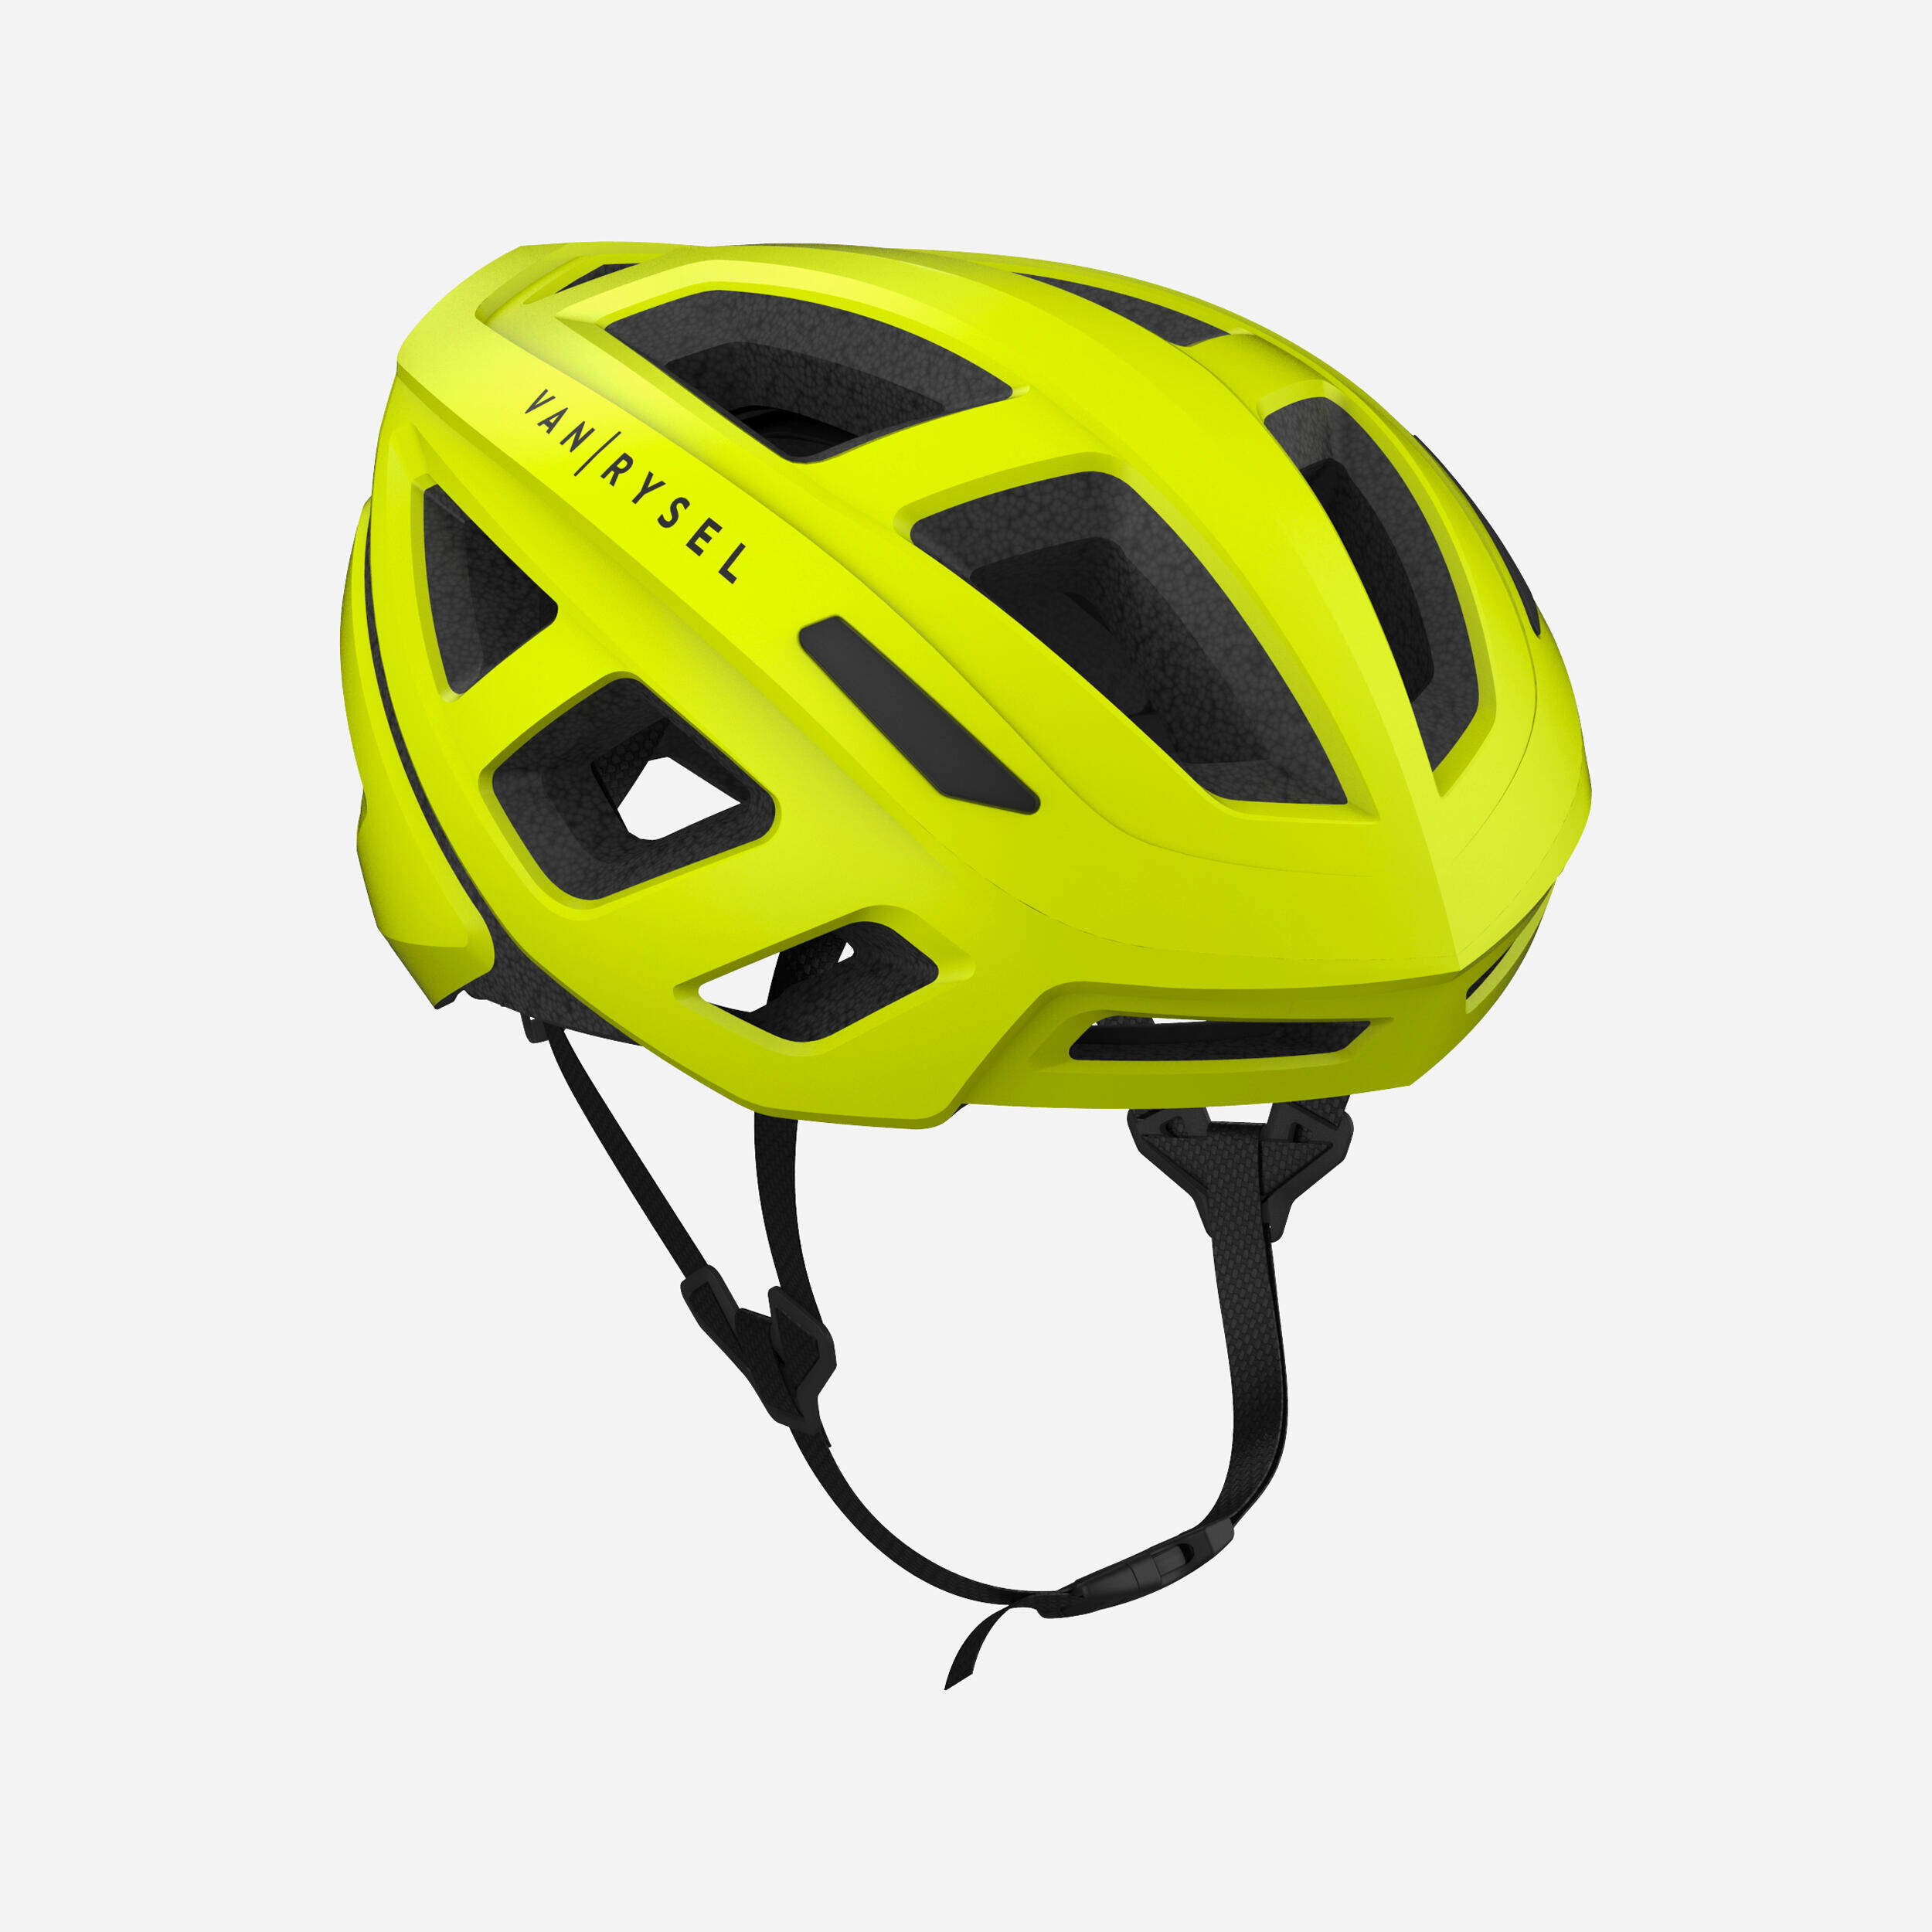 VAN RYSEL RoadR 500 Road Cycling Helmet - Neon Yellow